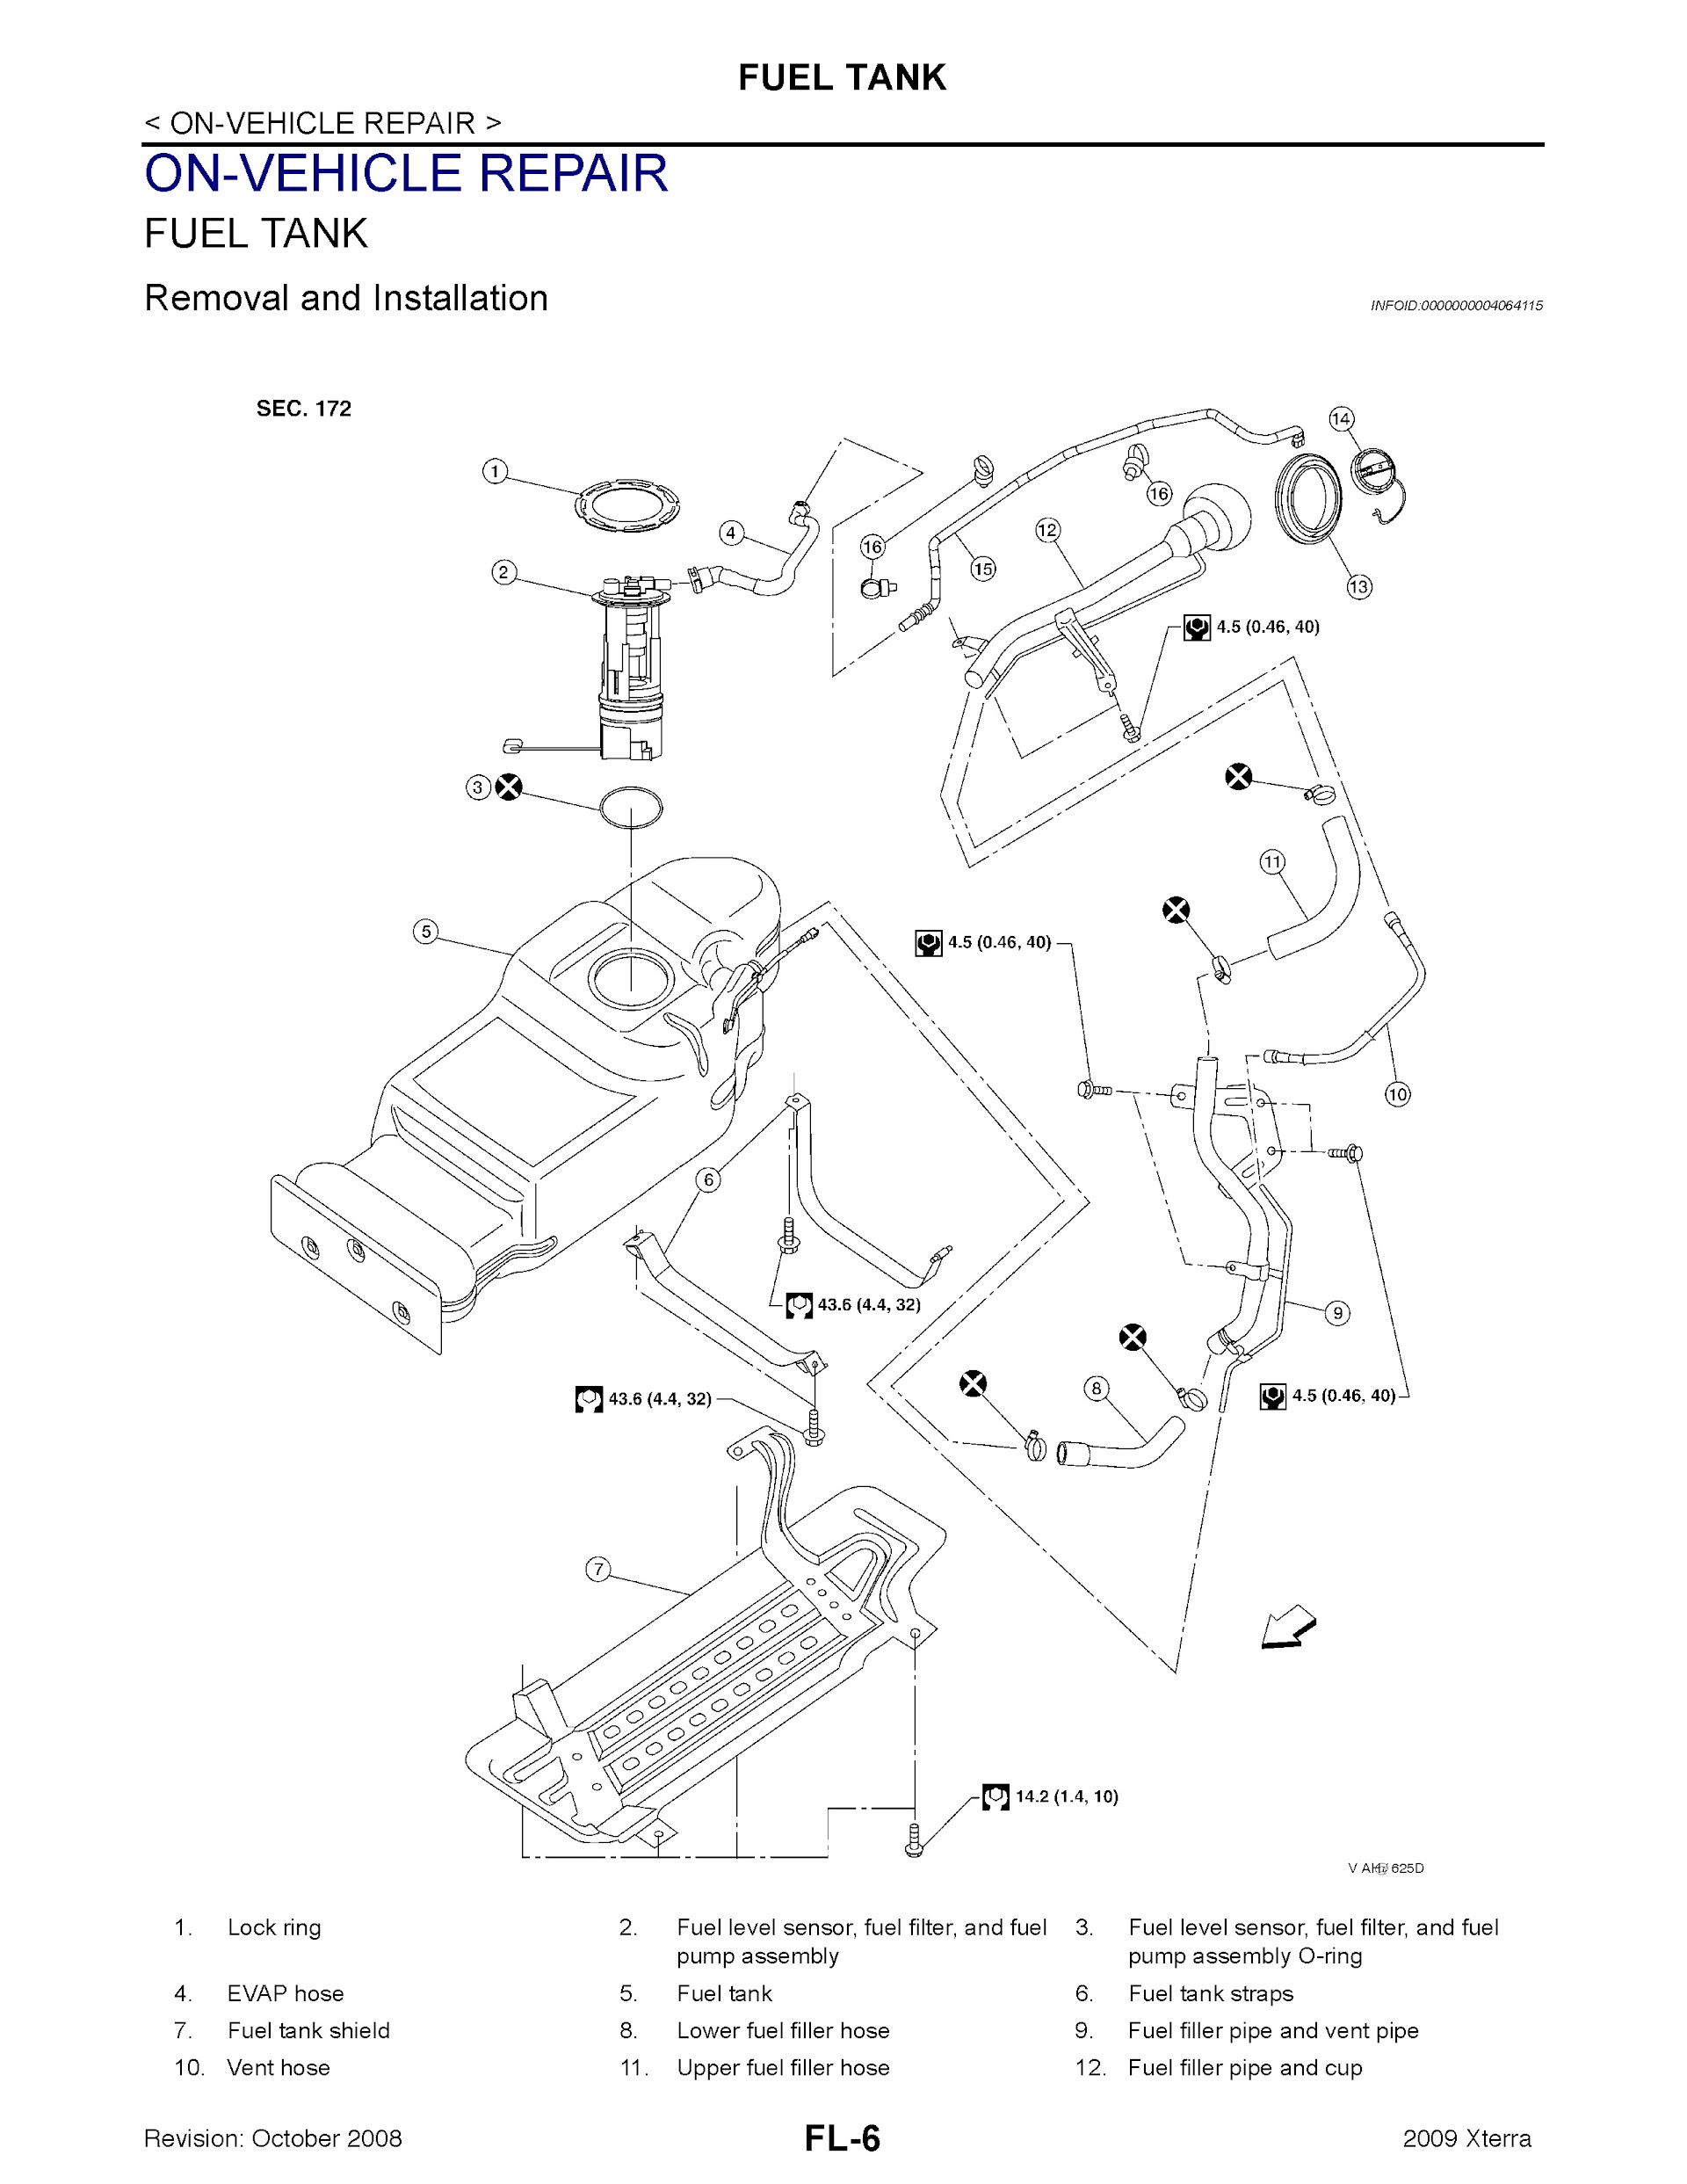 Download 2009 Nissan XTerra Repair Manual.